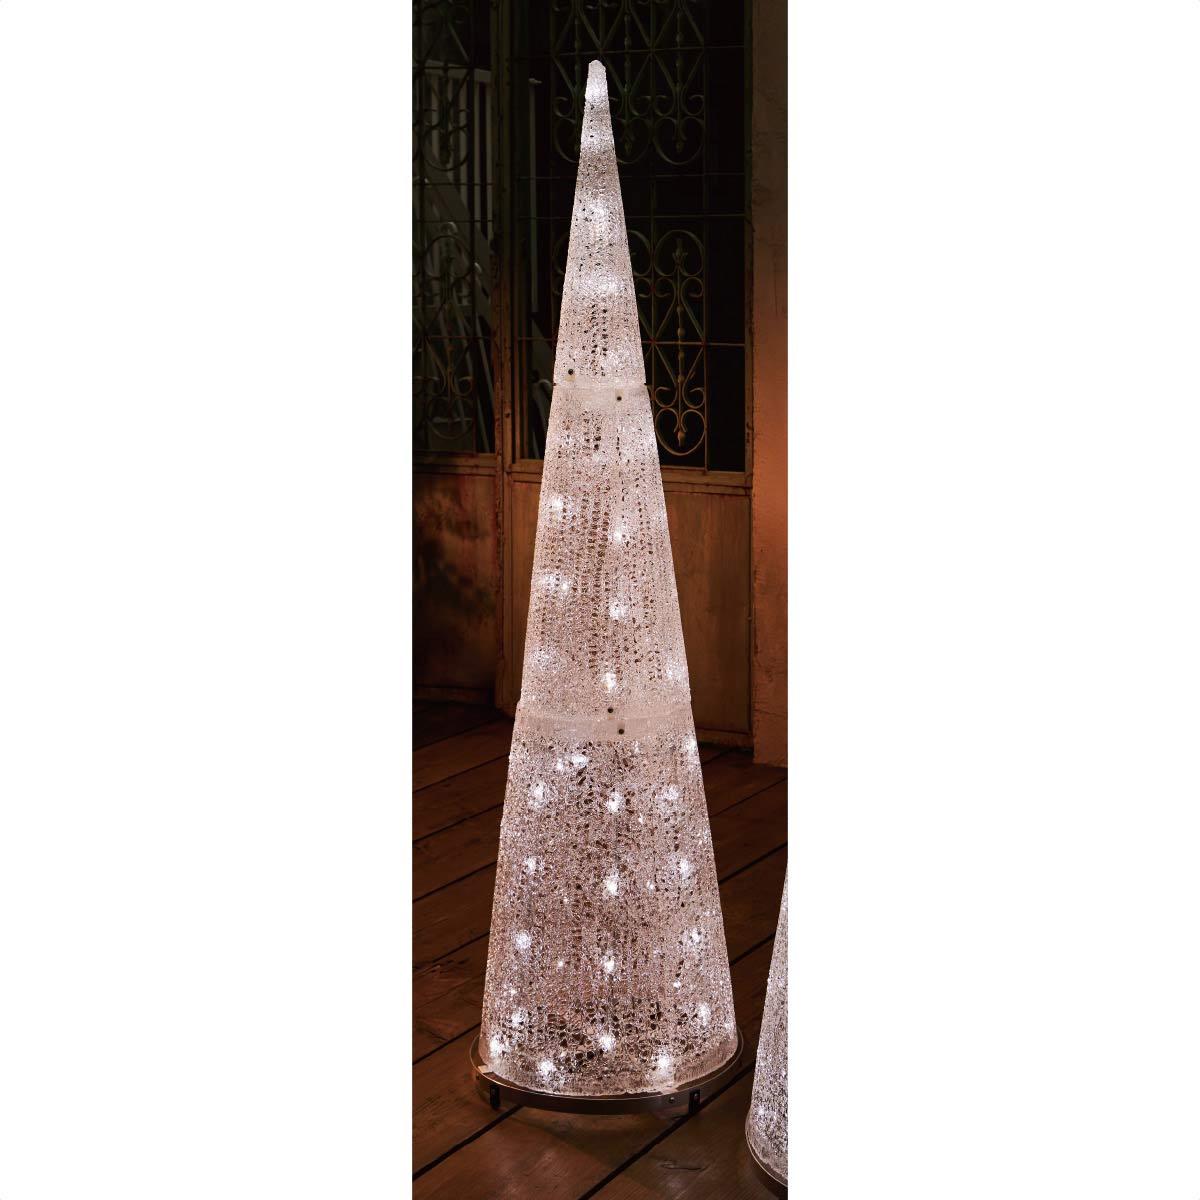 LEDブリリアントコーンツリー ホワイト クリスマスイルミネーション 屋外使用可 H140cm 【通販】ストア・エキスプレス